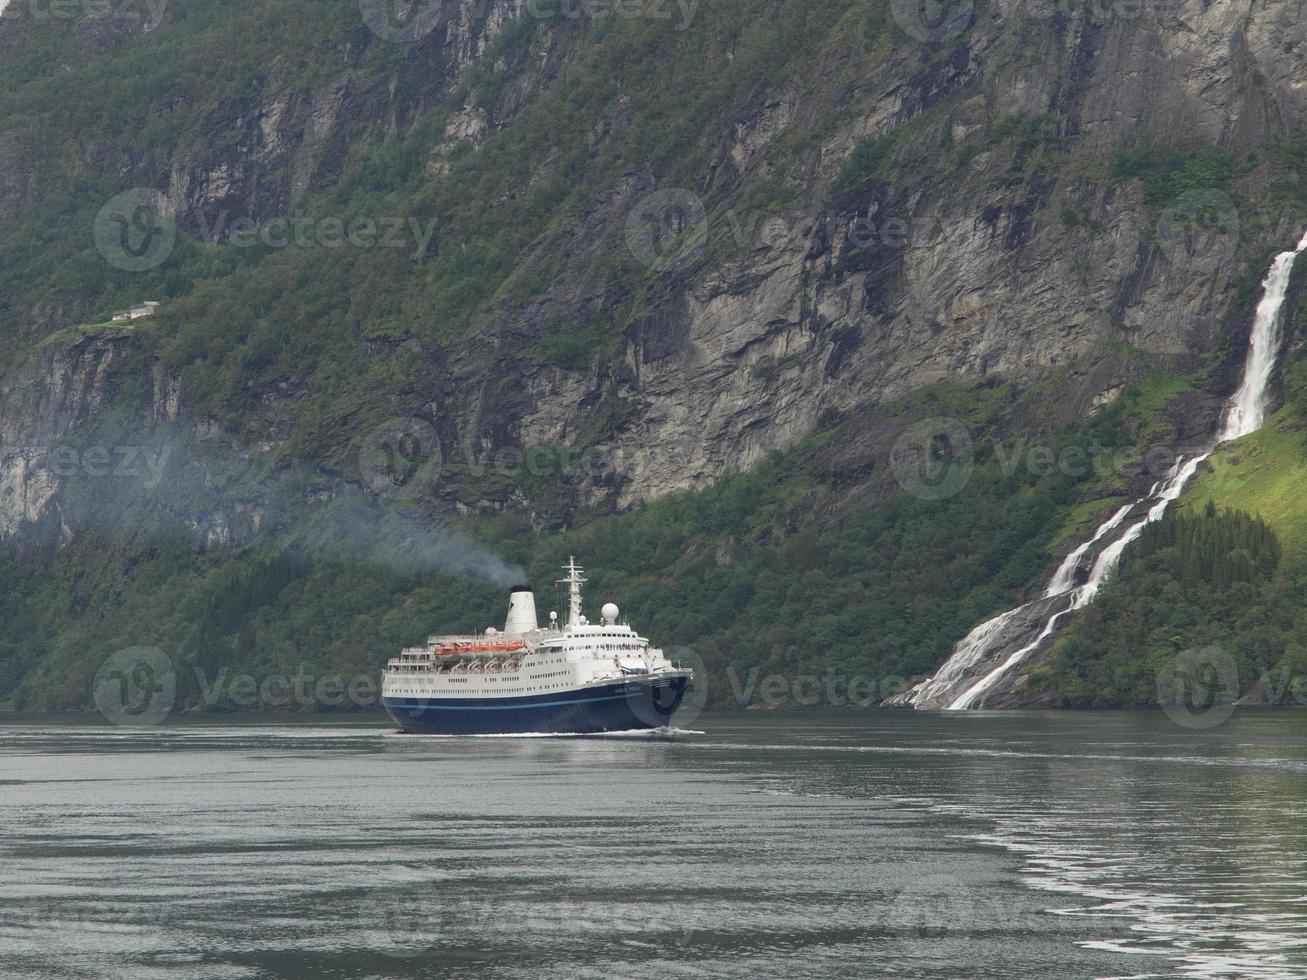 les fjords de norvège photo